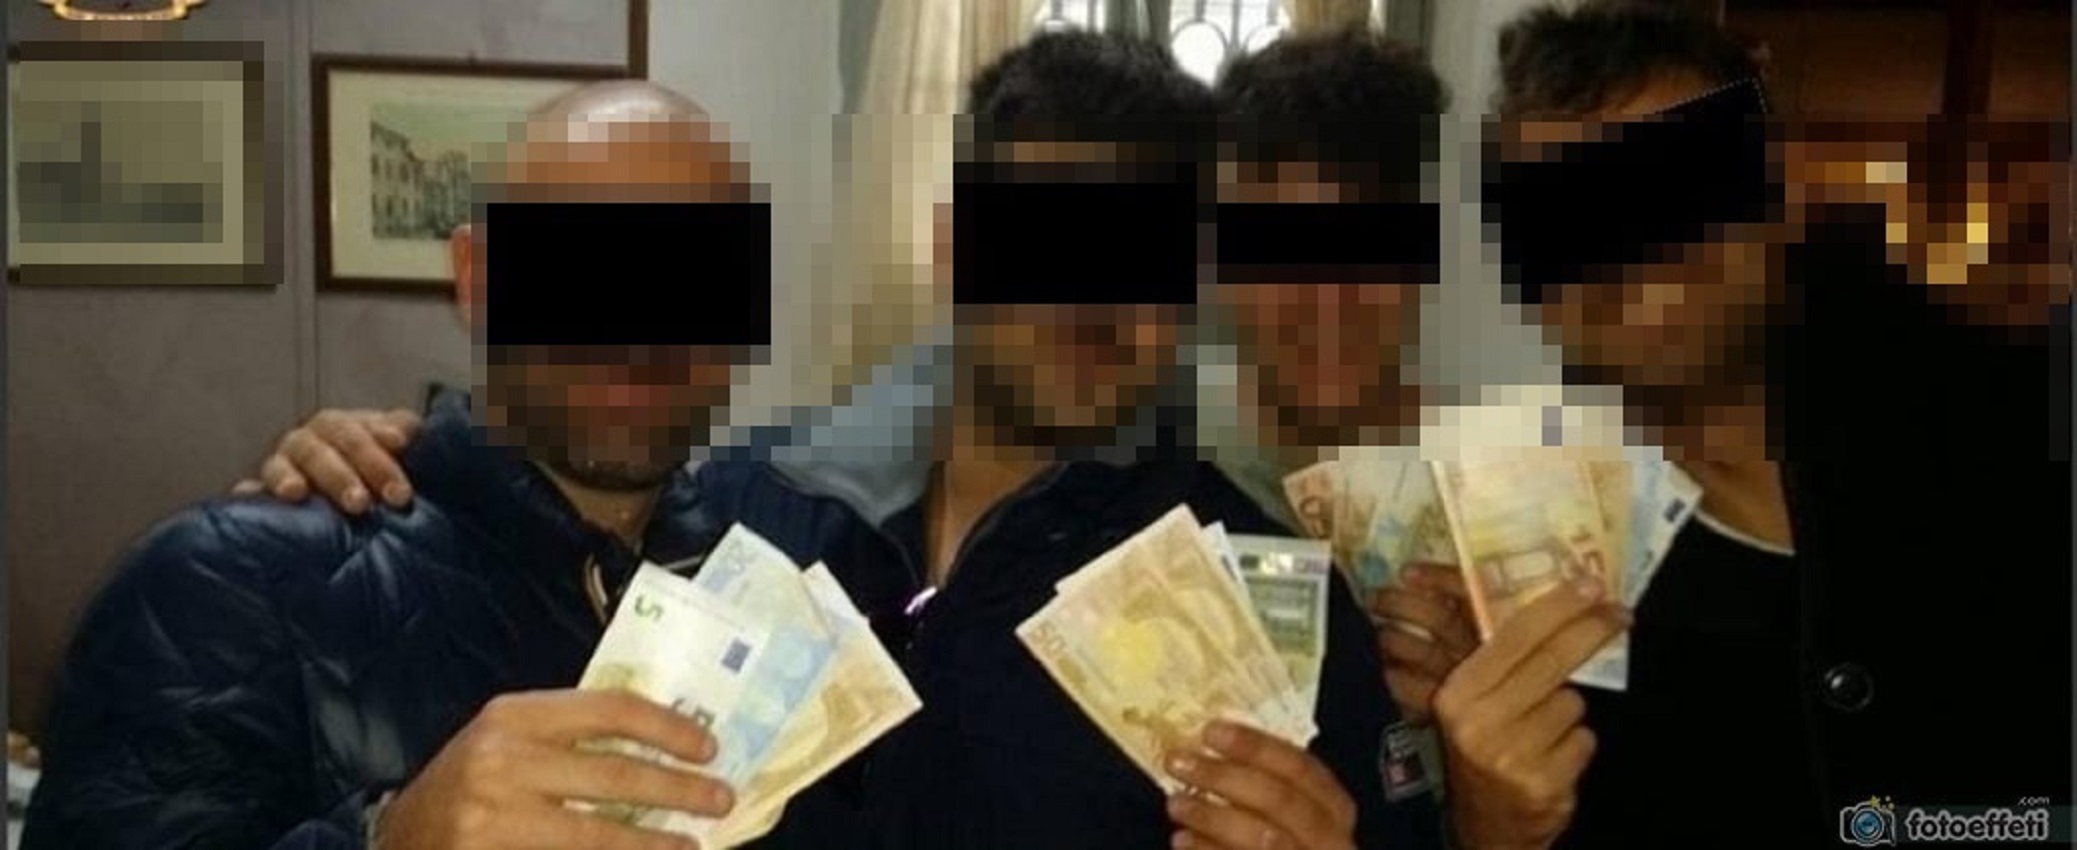 carabinieri foto soldi (2)